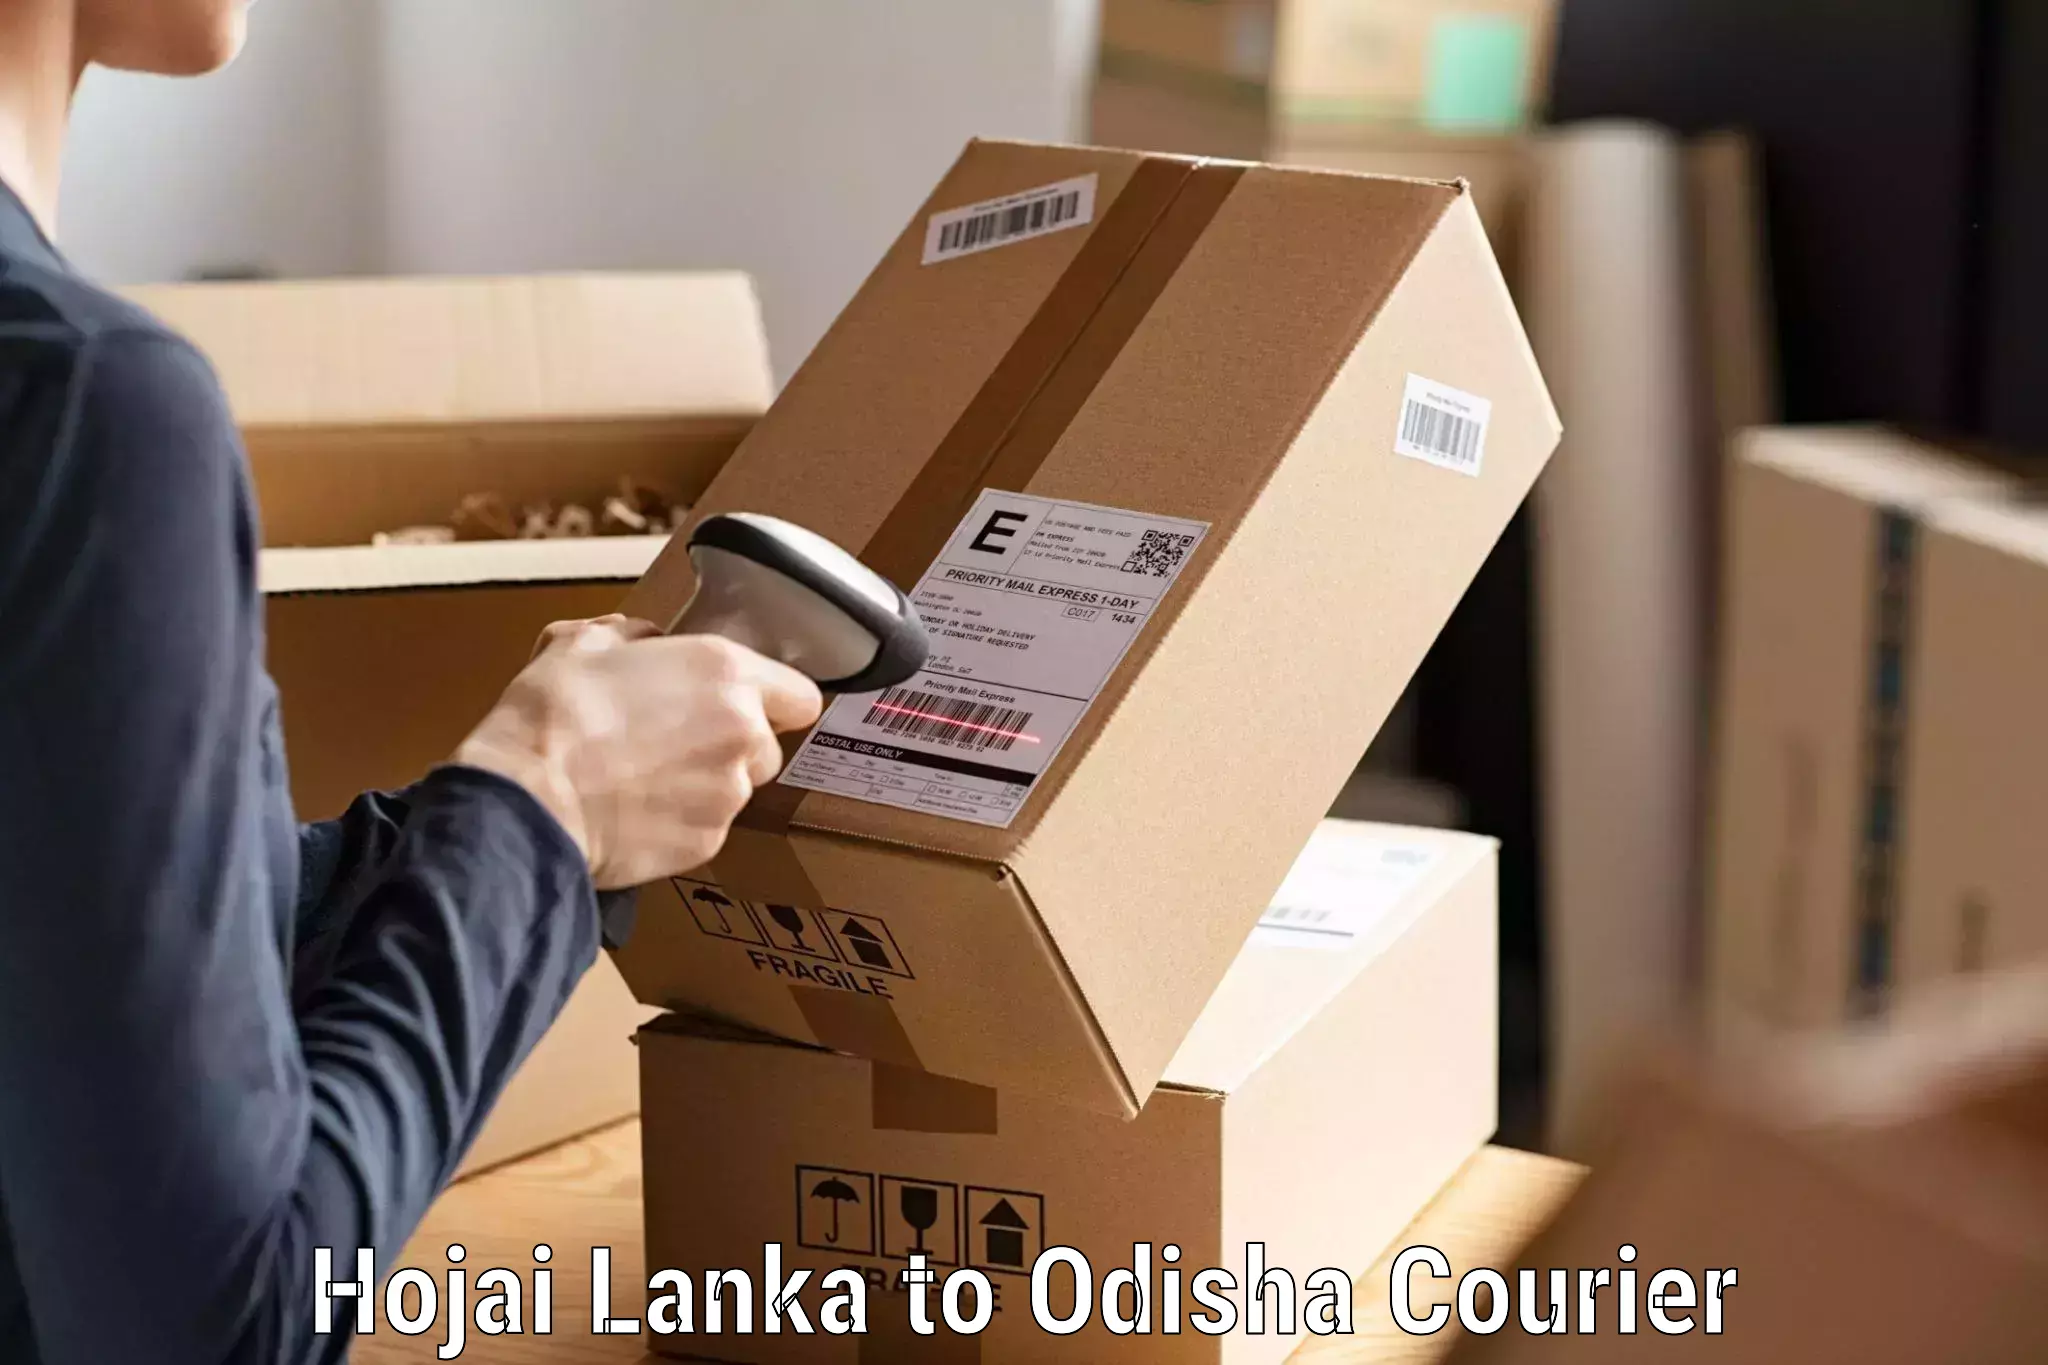 Next day courier Hojai Lanka to Tangi